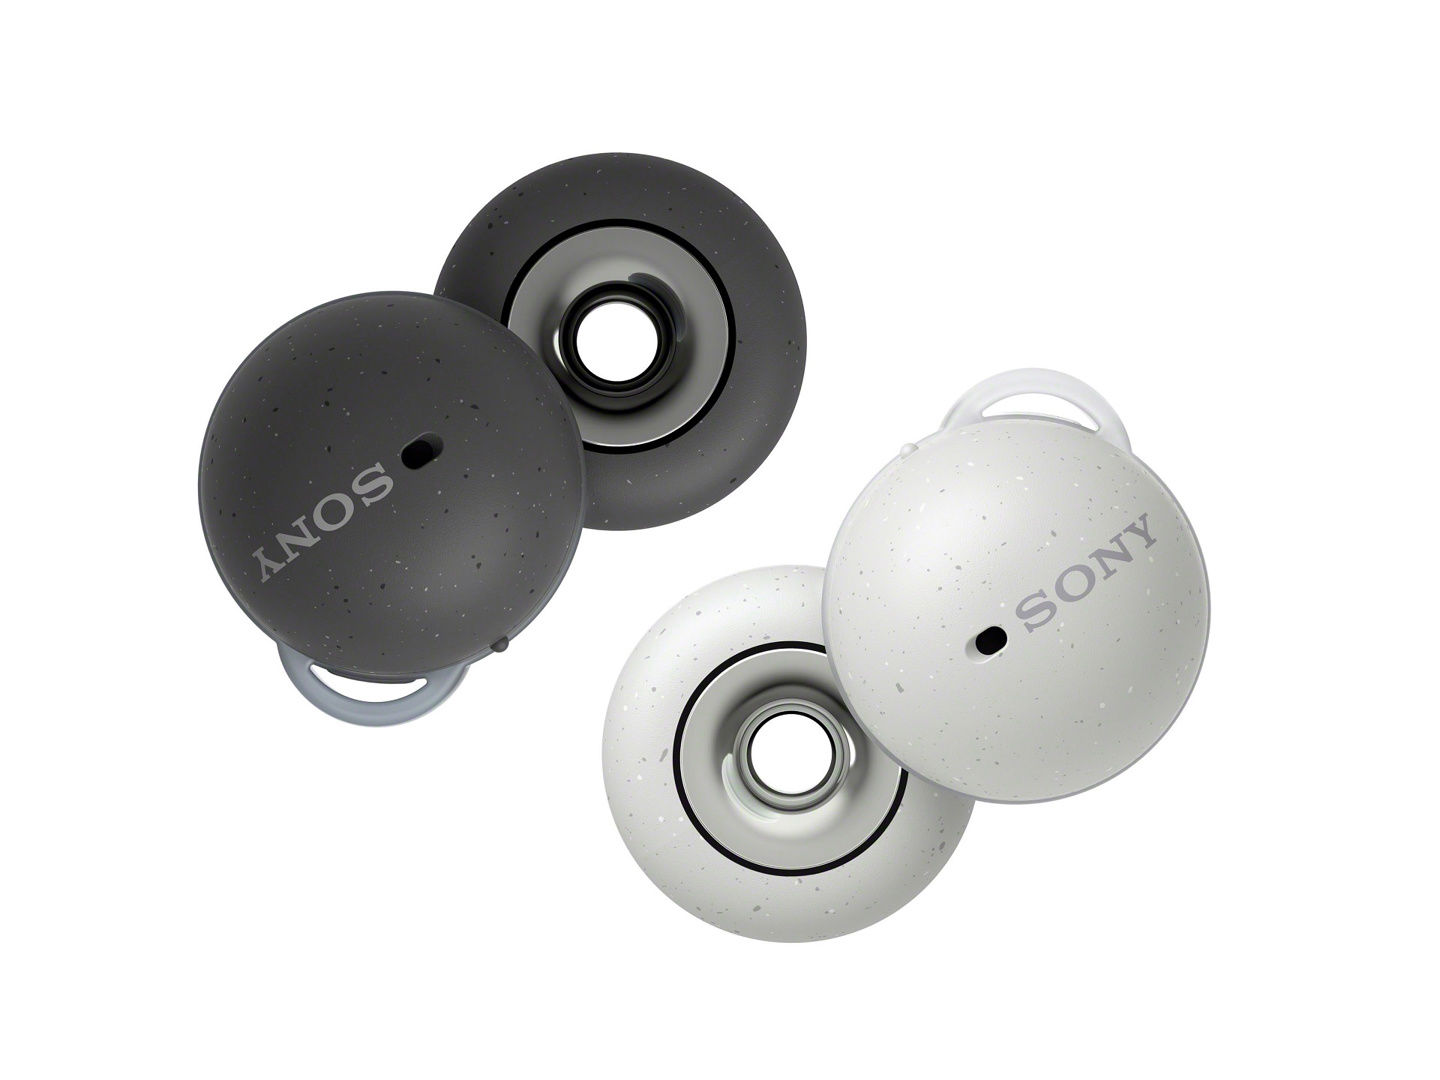 无线降噪耳机|索尼新款无线降噪耳机 Linkbuds WF-L900 曝光，独特外观设计